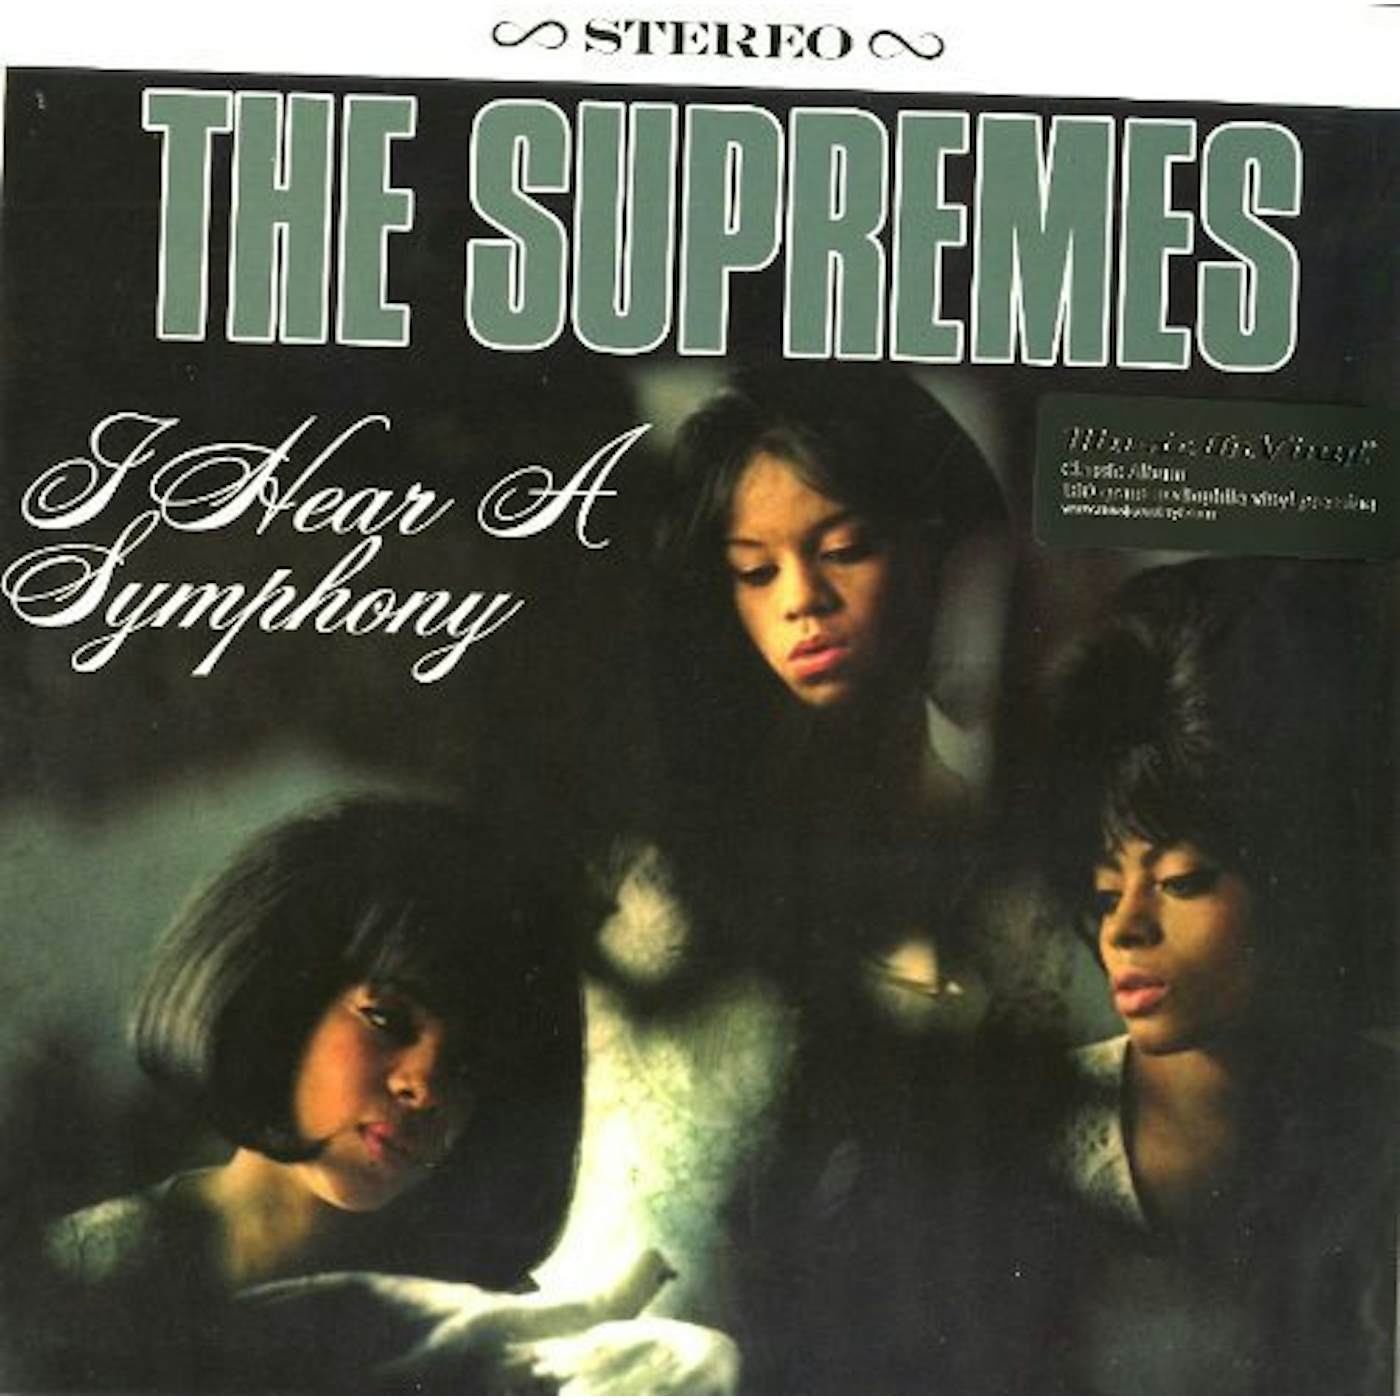 The Supremes I Hear A Symphony Vinyl Record